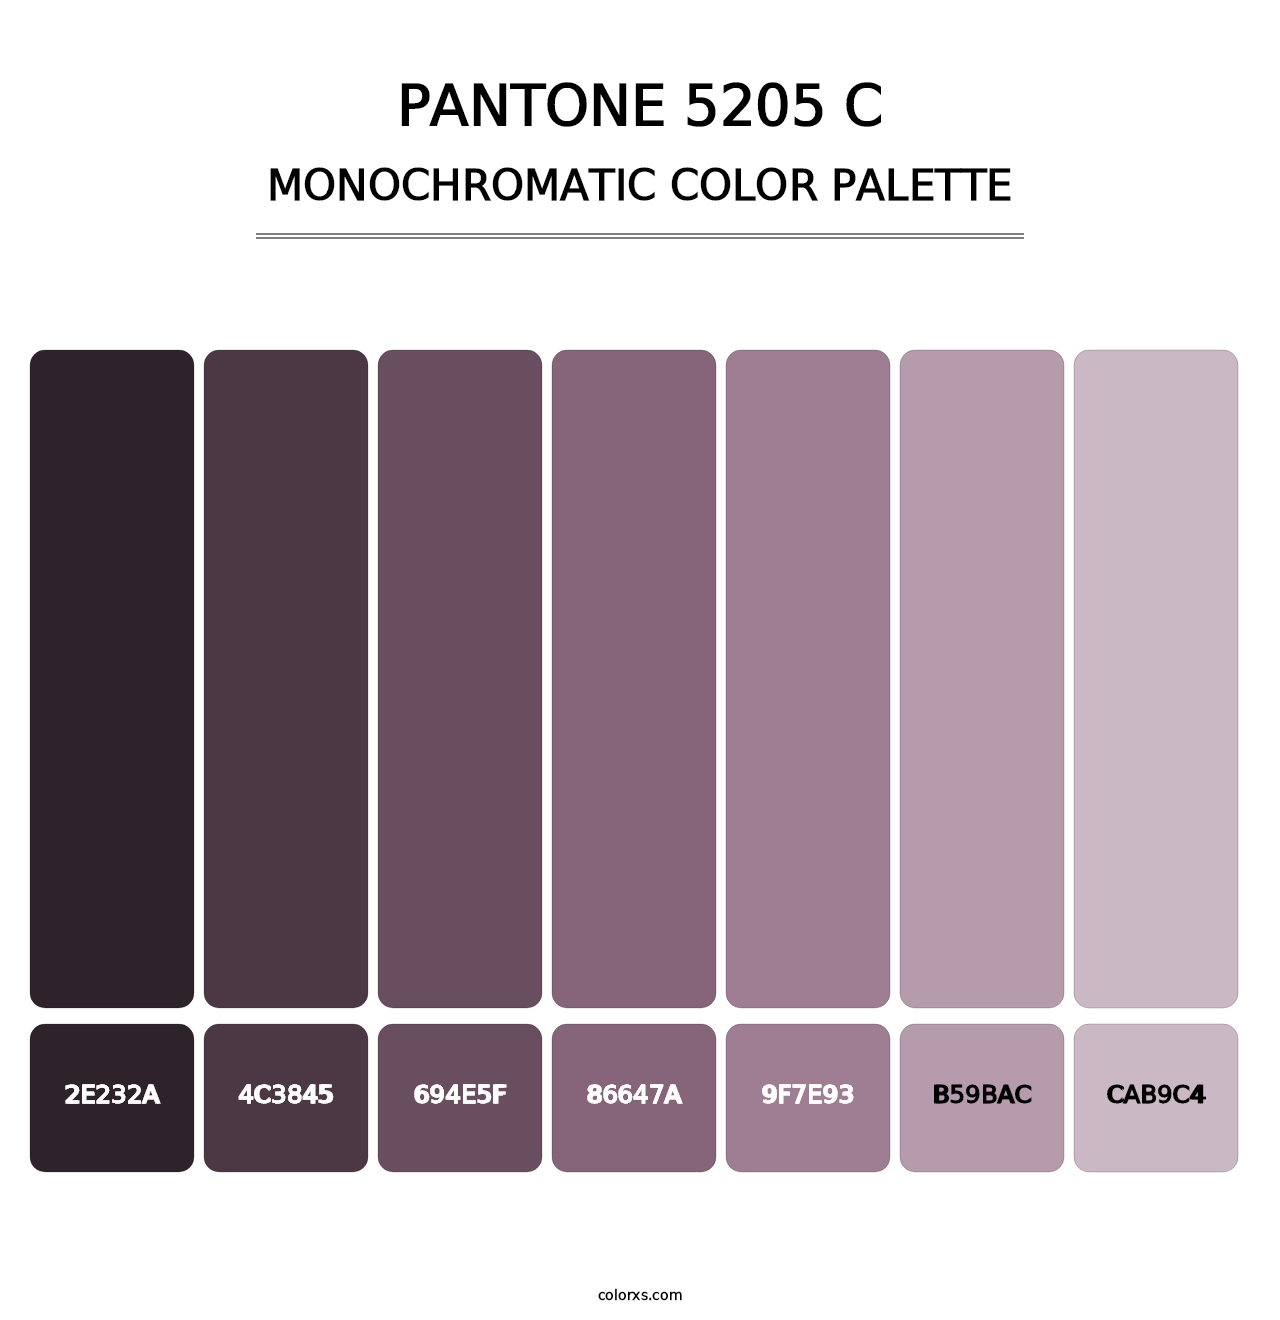 PANTONE 5205 C - Monochromatic Color Palette